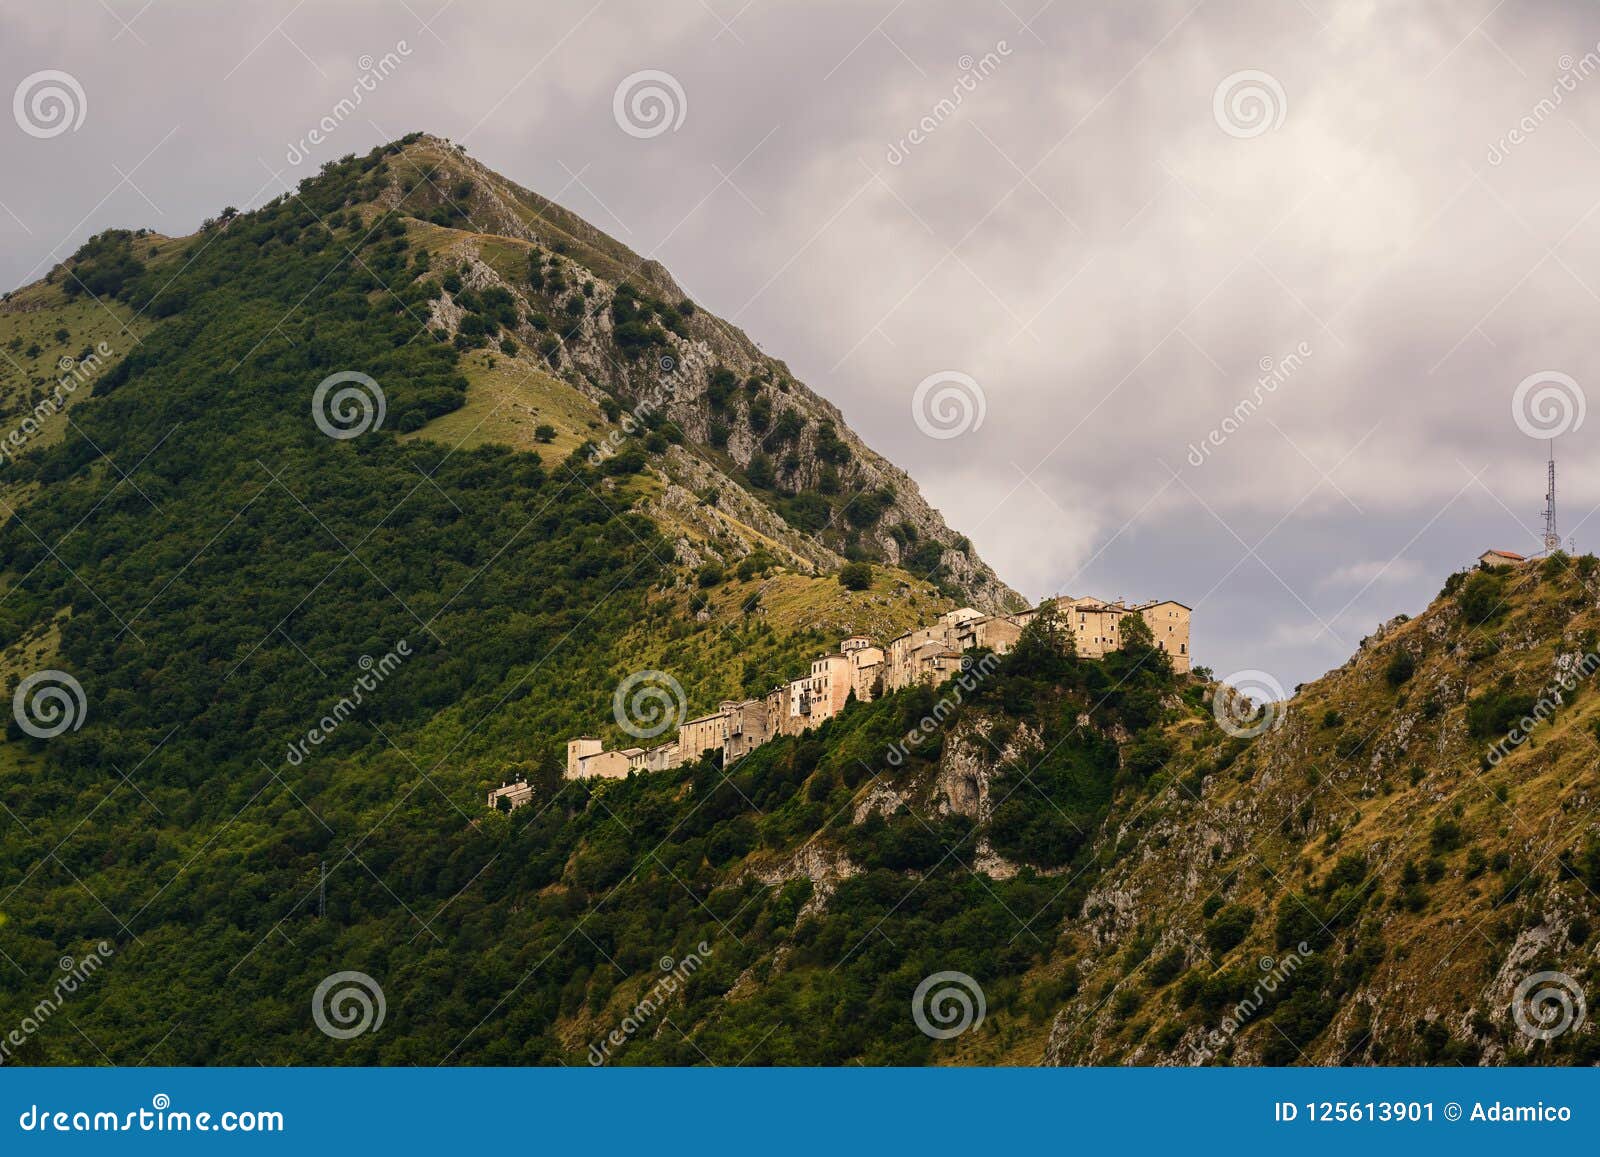 castrovalva, village in the abruzzo on the mountain